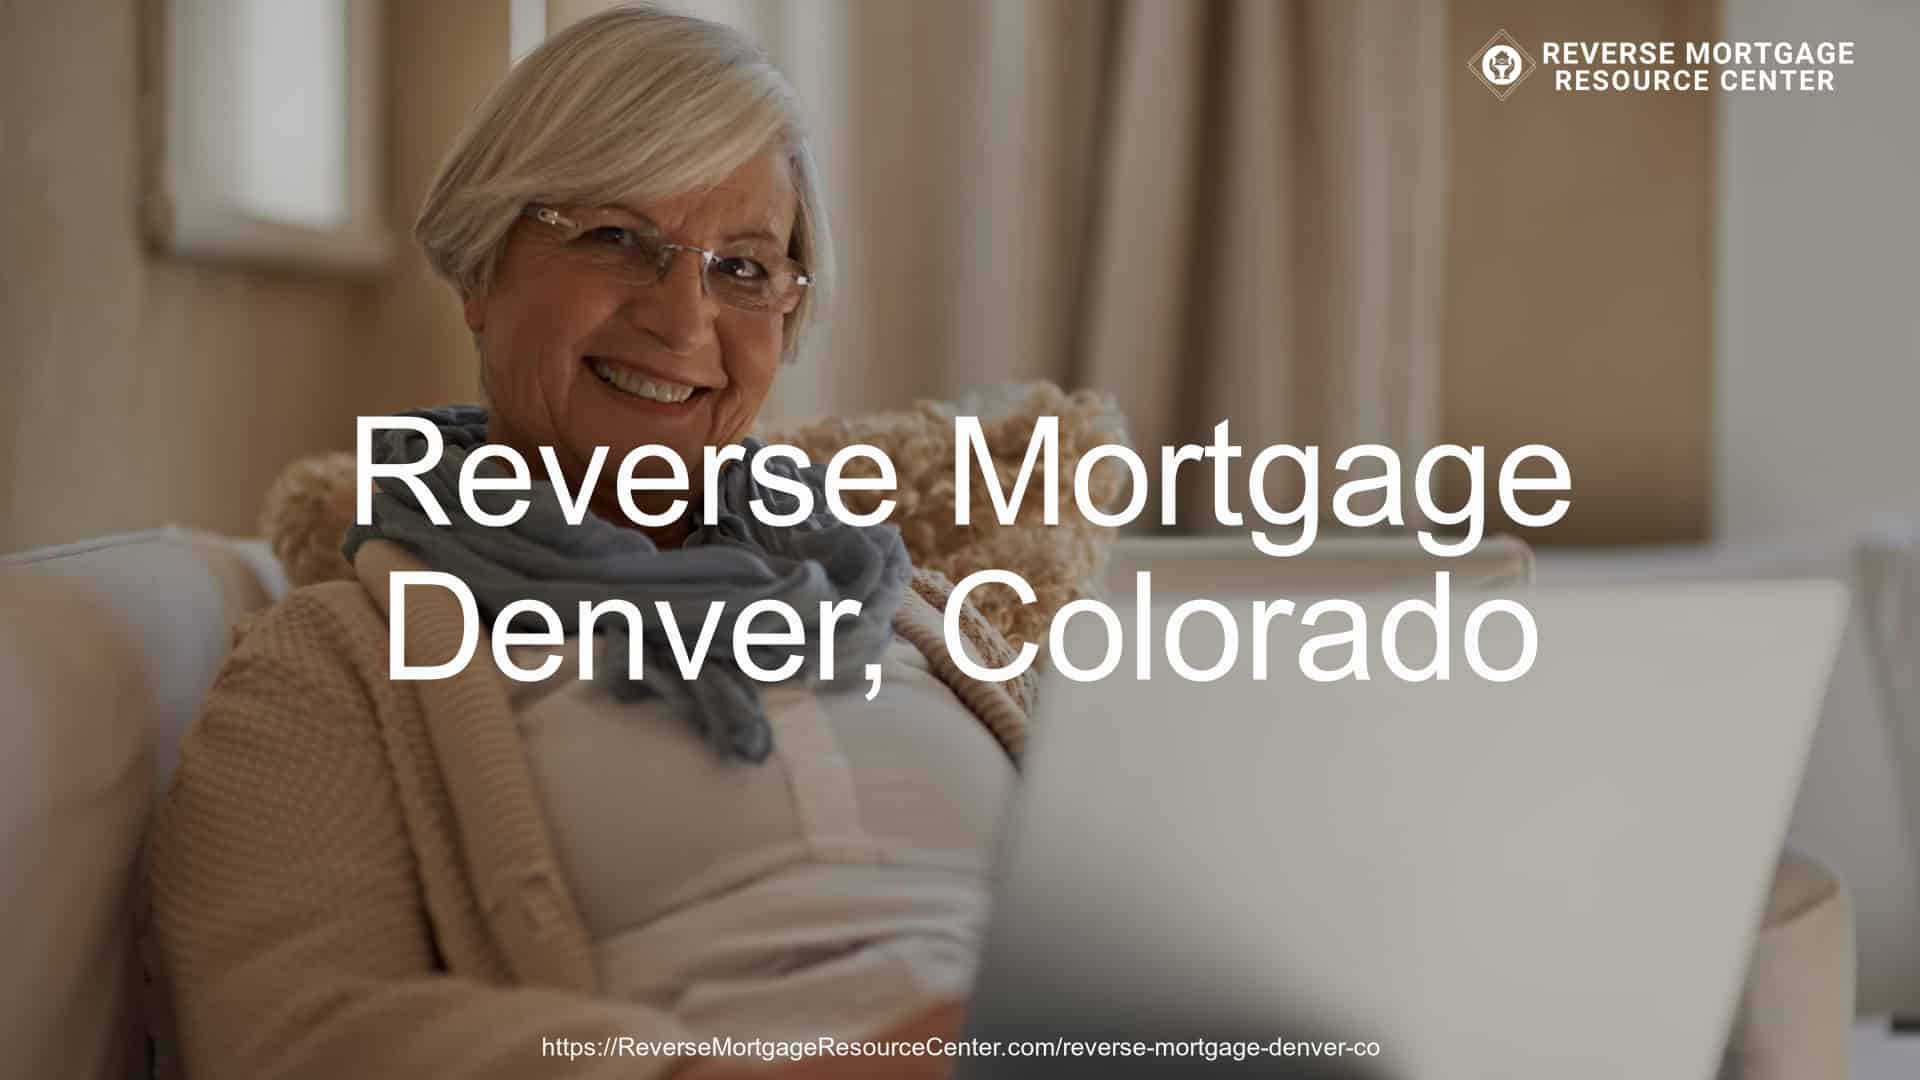 Reverse Mortgage Loans in Denver Colorado